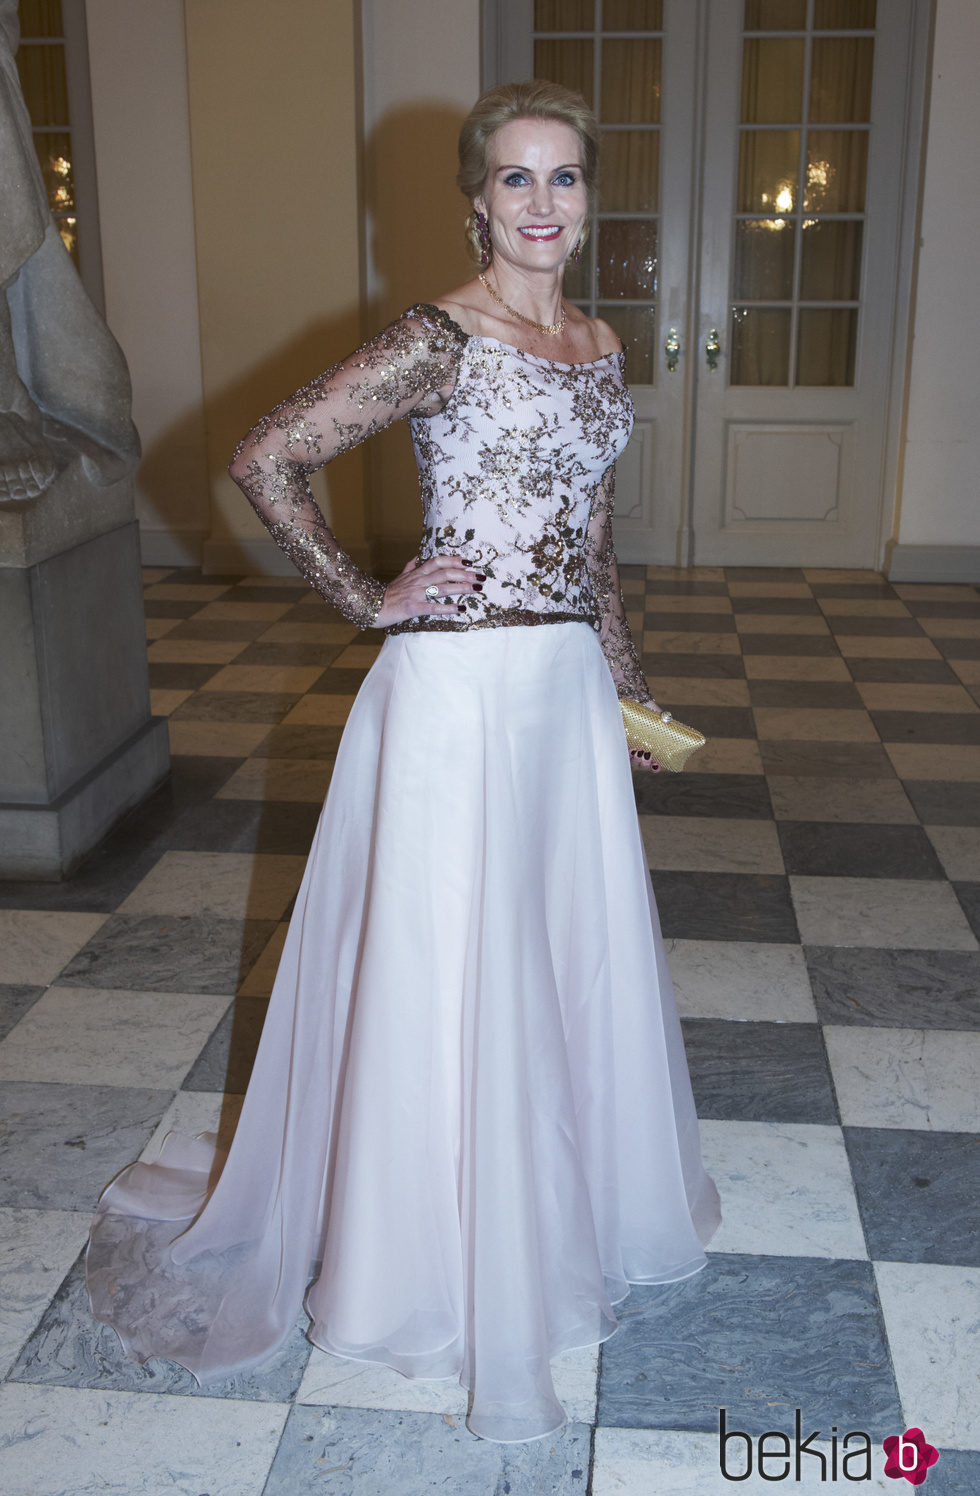 Helle Thorning-Schmidt en el 75 cumpleaños de la Reina Margarita de Dinamarca